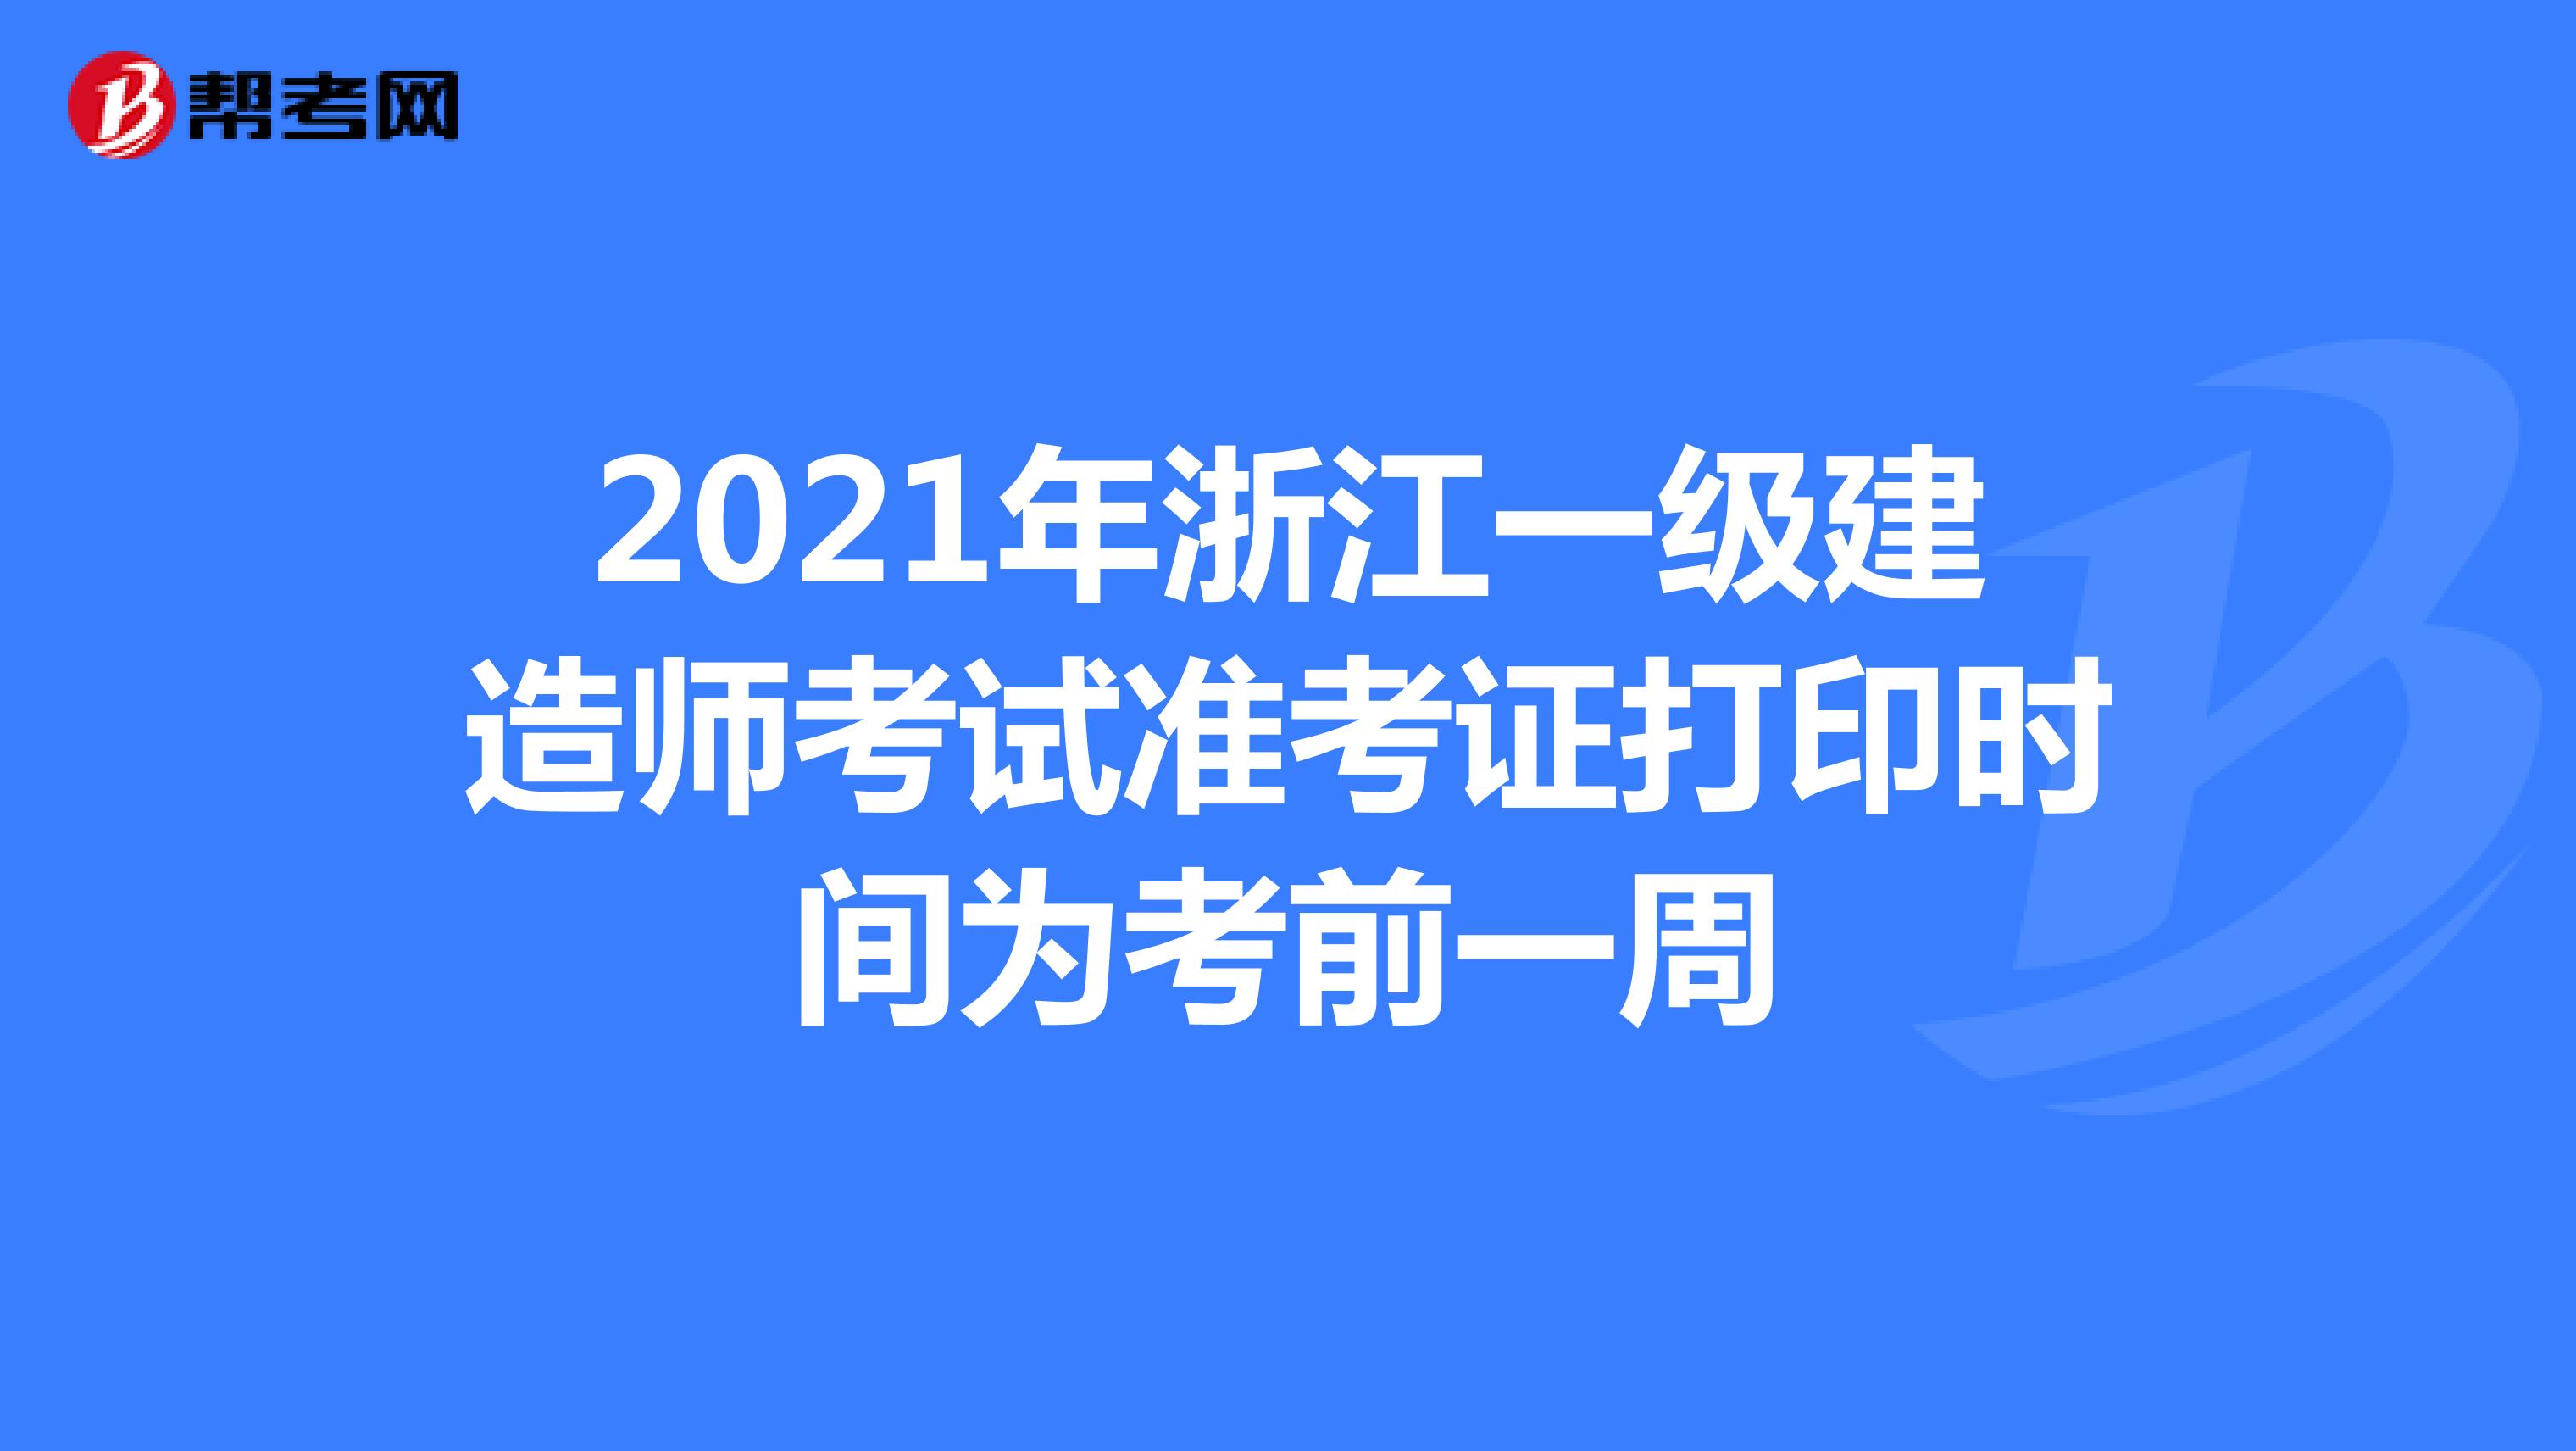 2021年浙江一级建造师考试准考证打印时间为考前一周